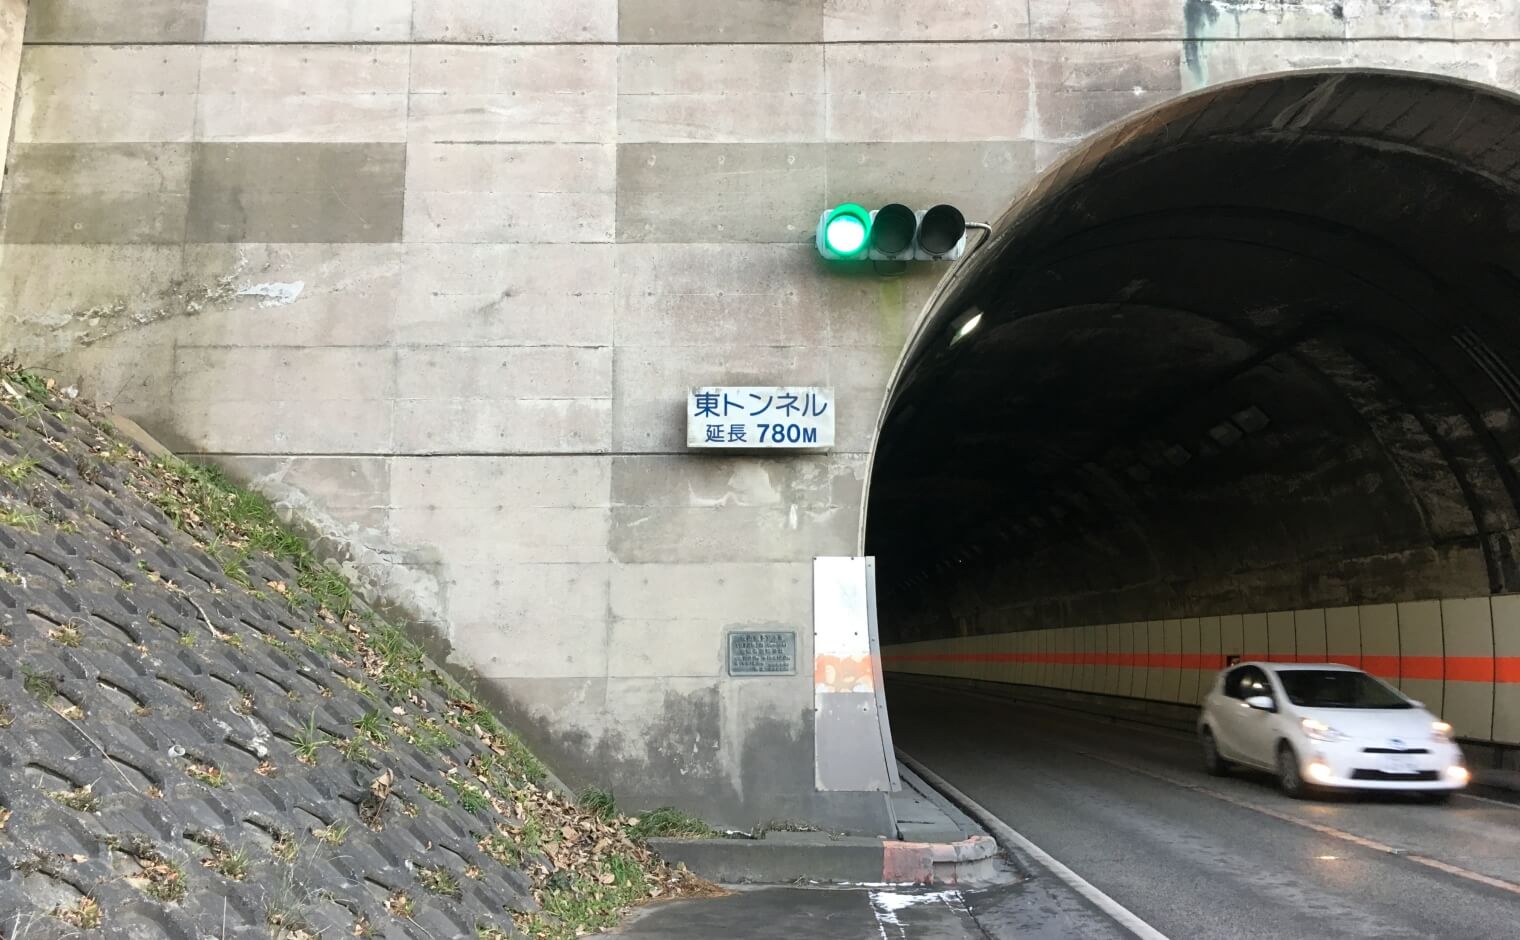 トンネル用信号の意味